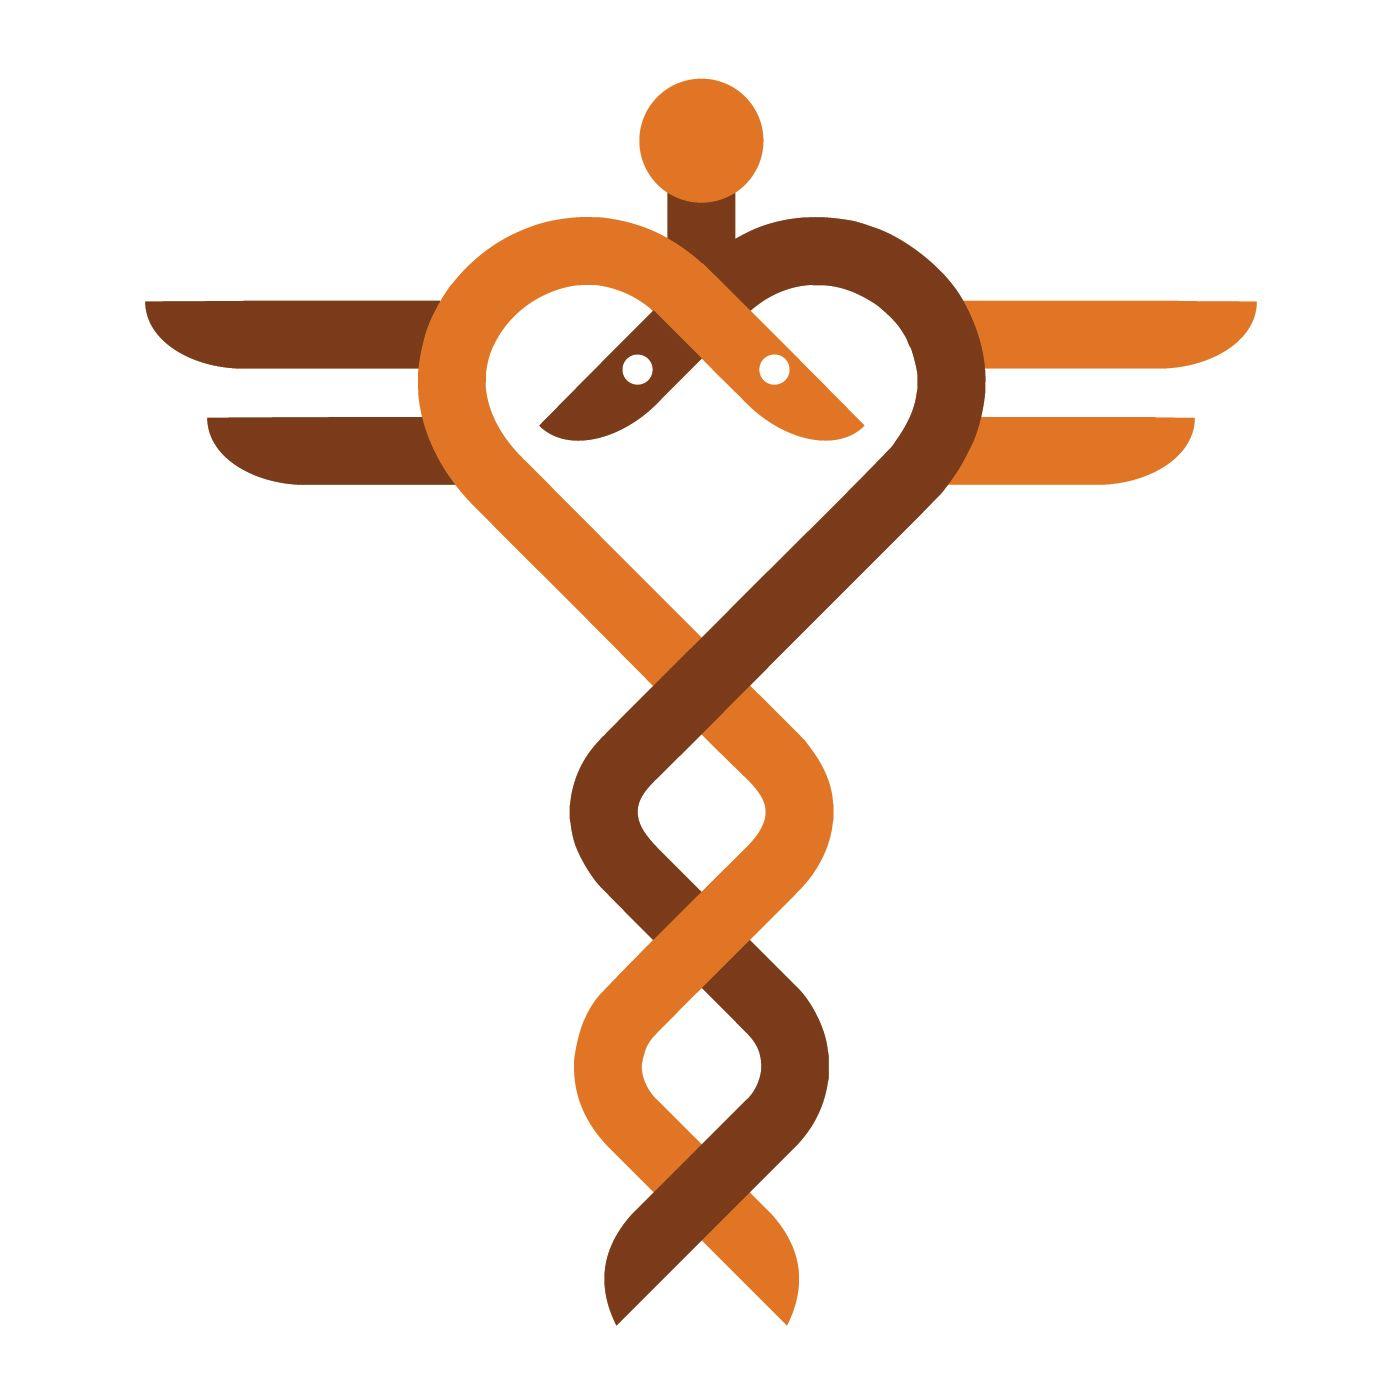 Heart Hospital Logo - Gardner Design Heart Hospital logo design. Two stylized